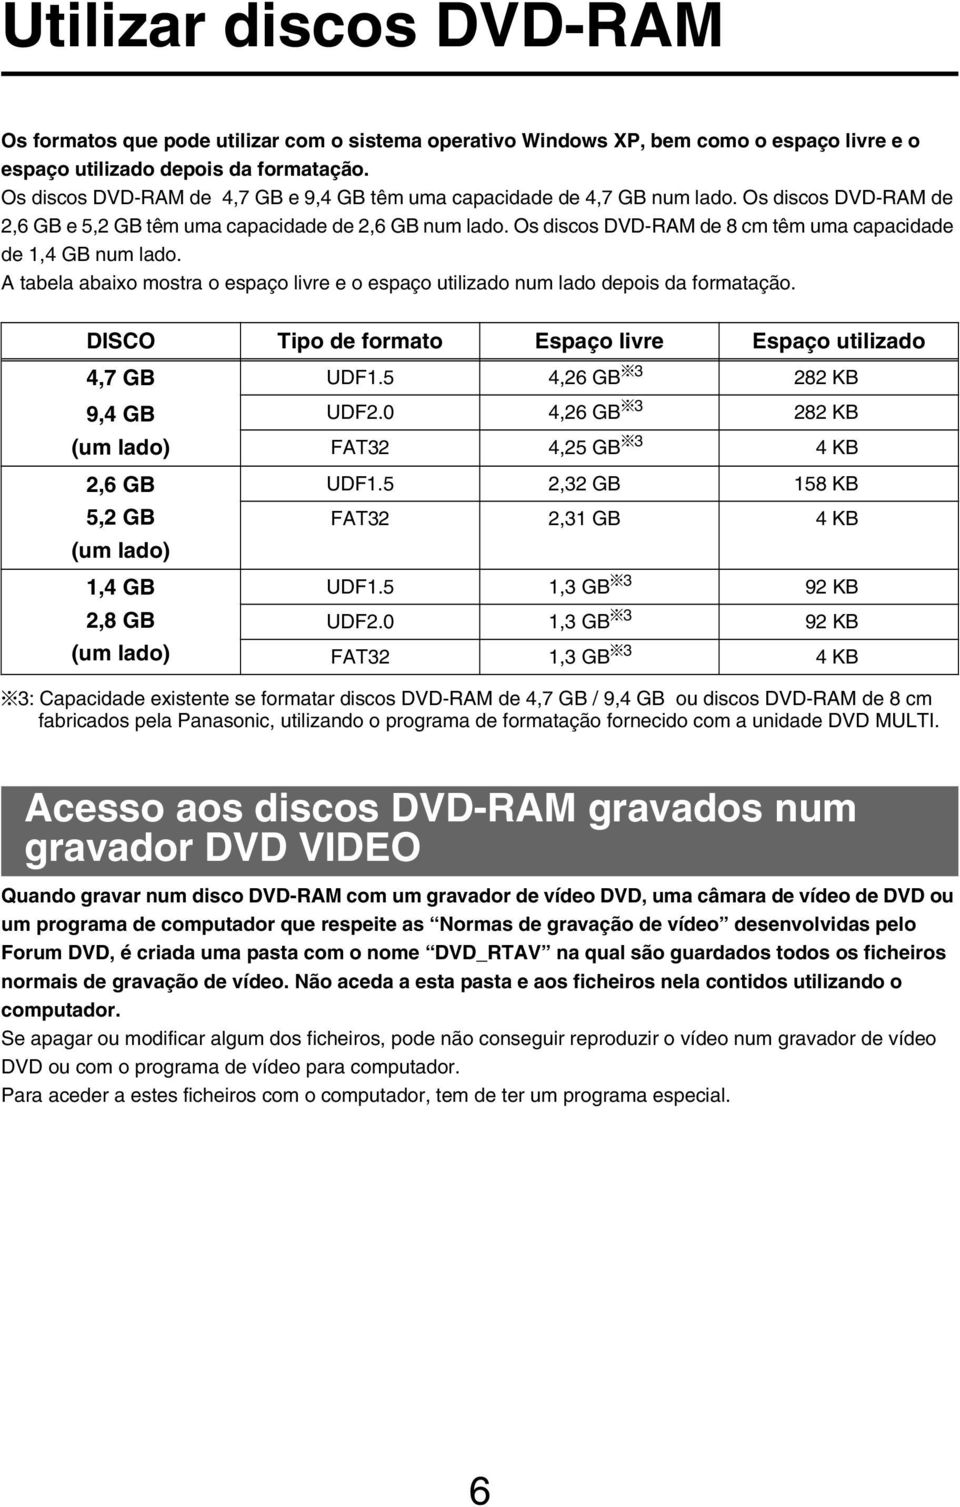 Os discos DVD-RAM de 8 cm têm uma capacidade de 1,4 GB num lado. A tabela abaixo mostra o espaço livre e o espaço utilizado num lado depois da formatação.